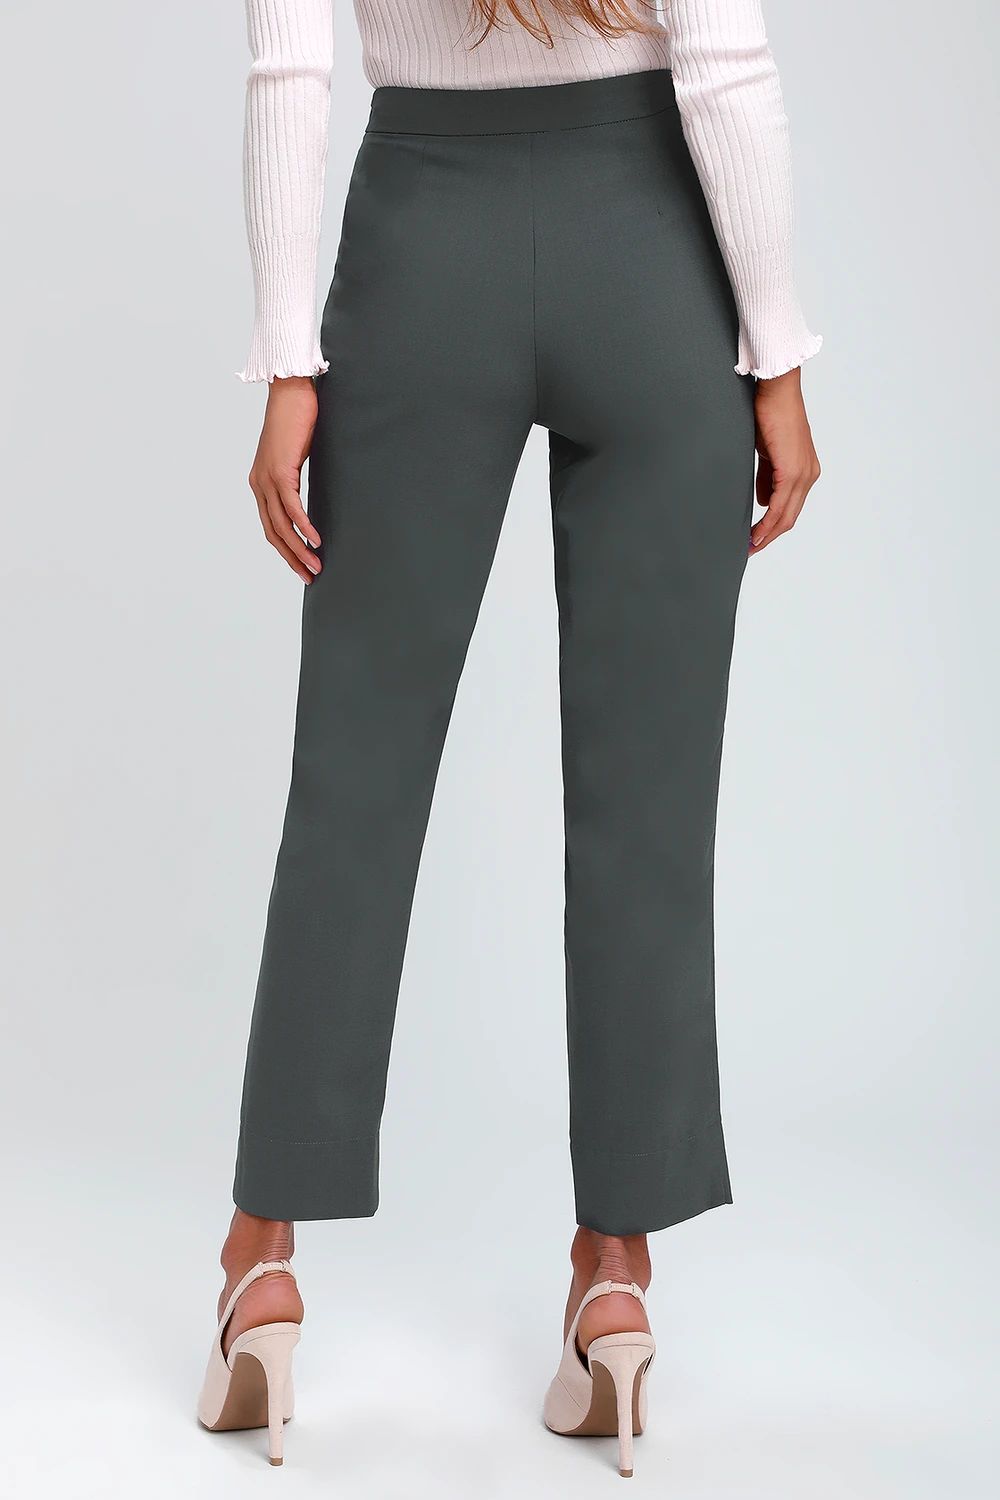 Aisha Charcoal Grey Trouser Pants | Lulus (US)